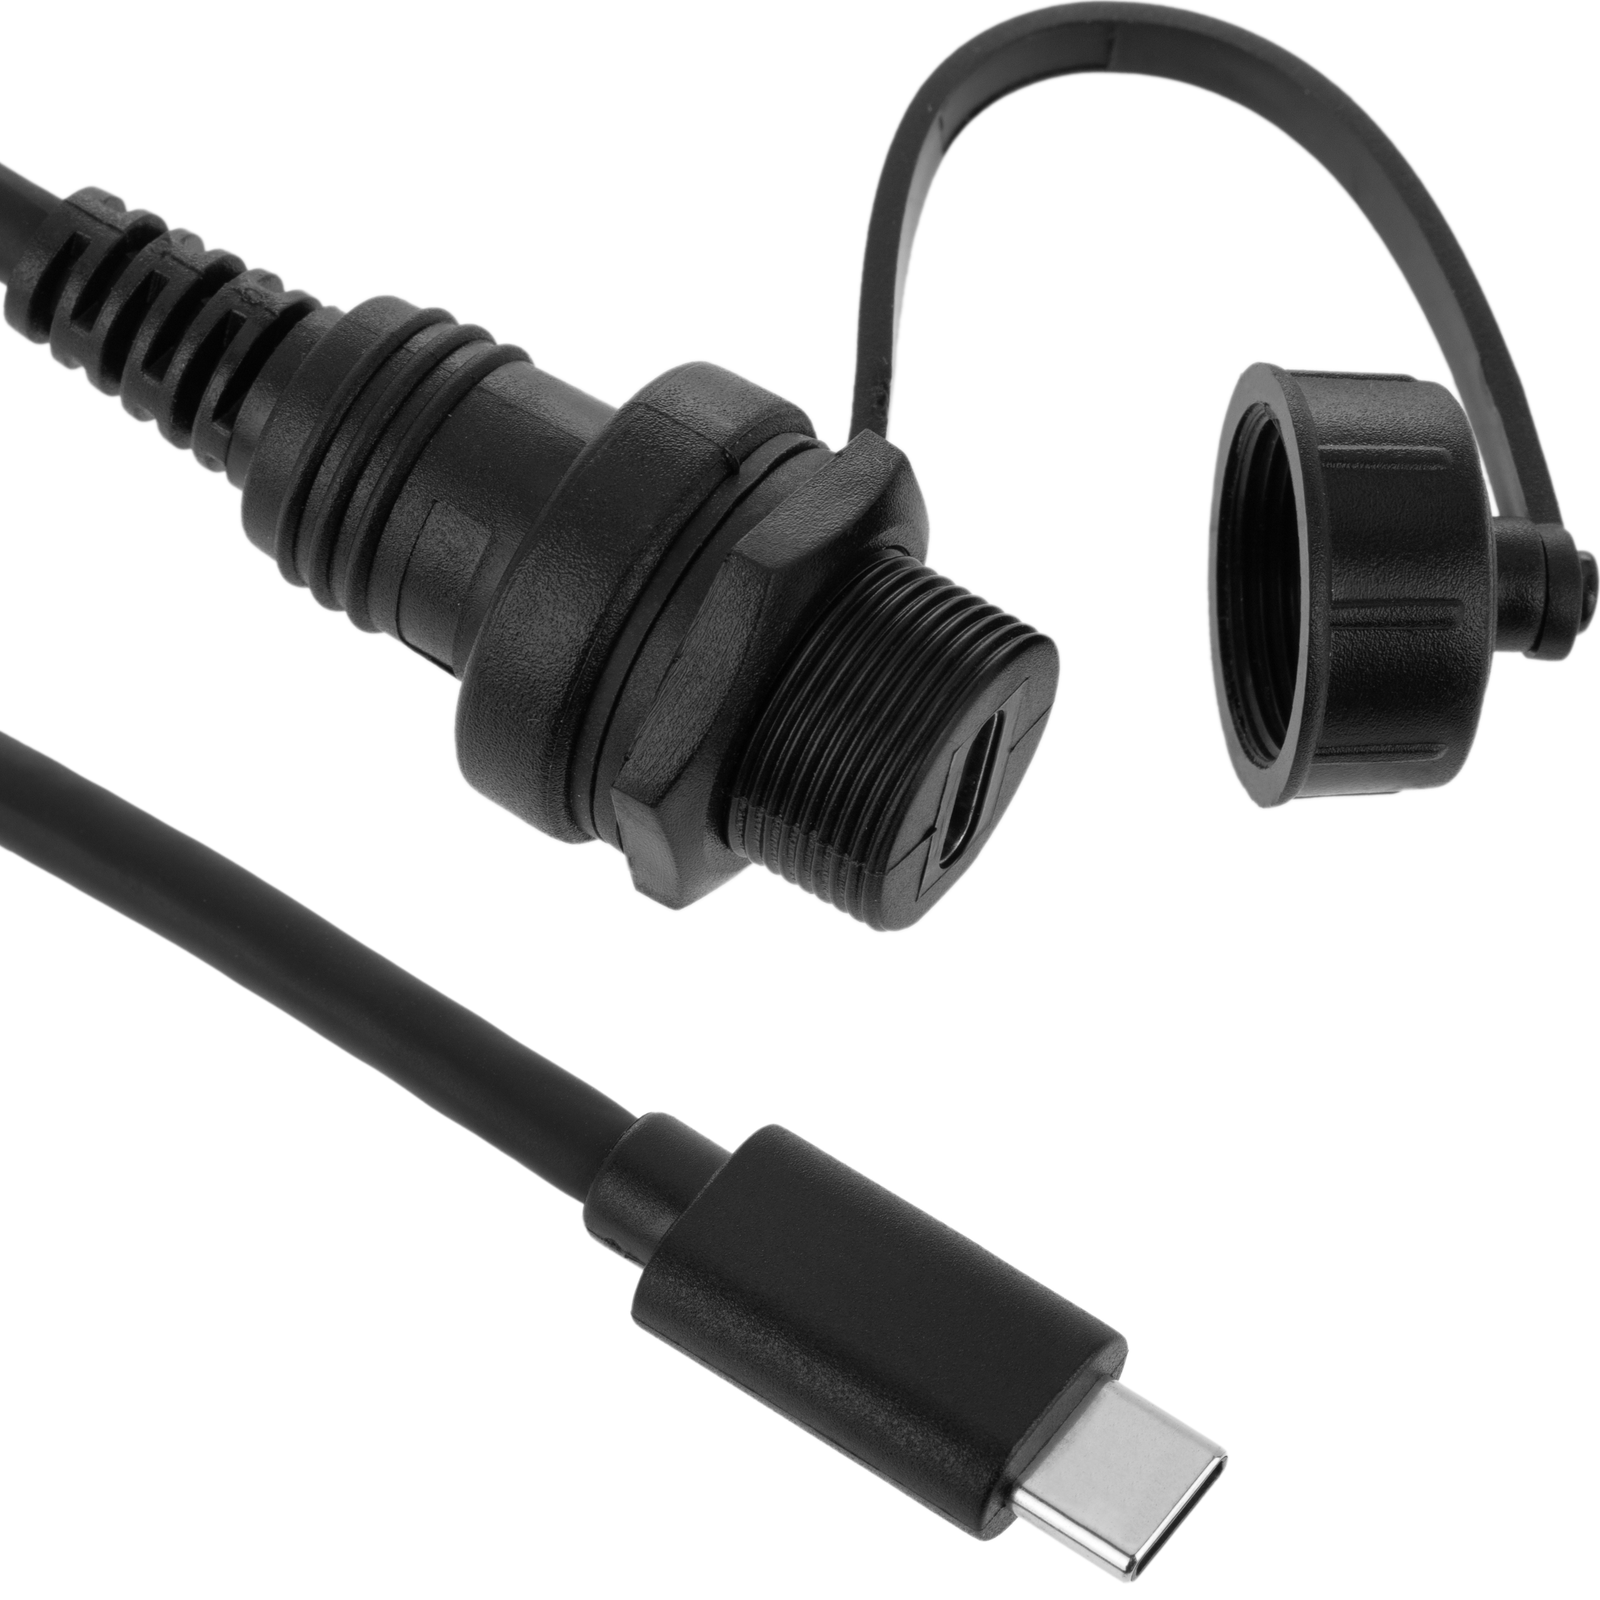 Cable de alimentación USB universal para PDA o teléfono DC 3,5mm -  Cablematic